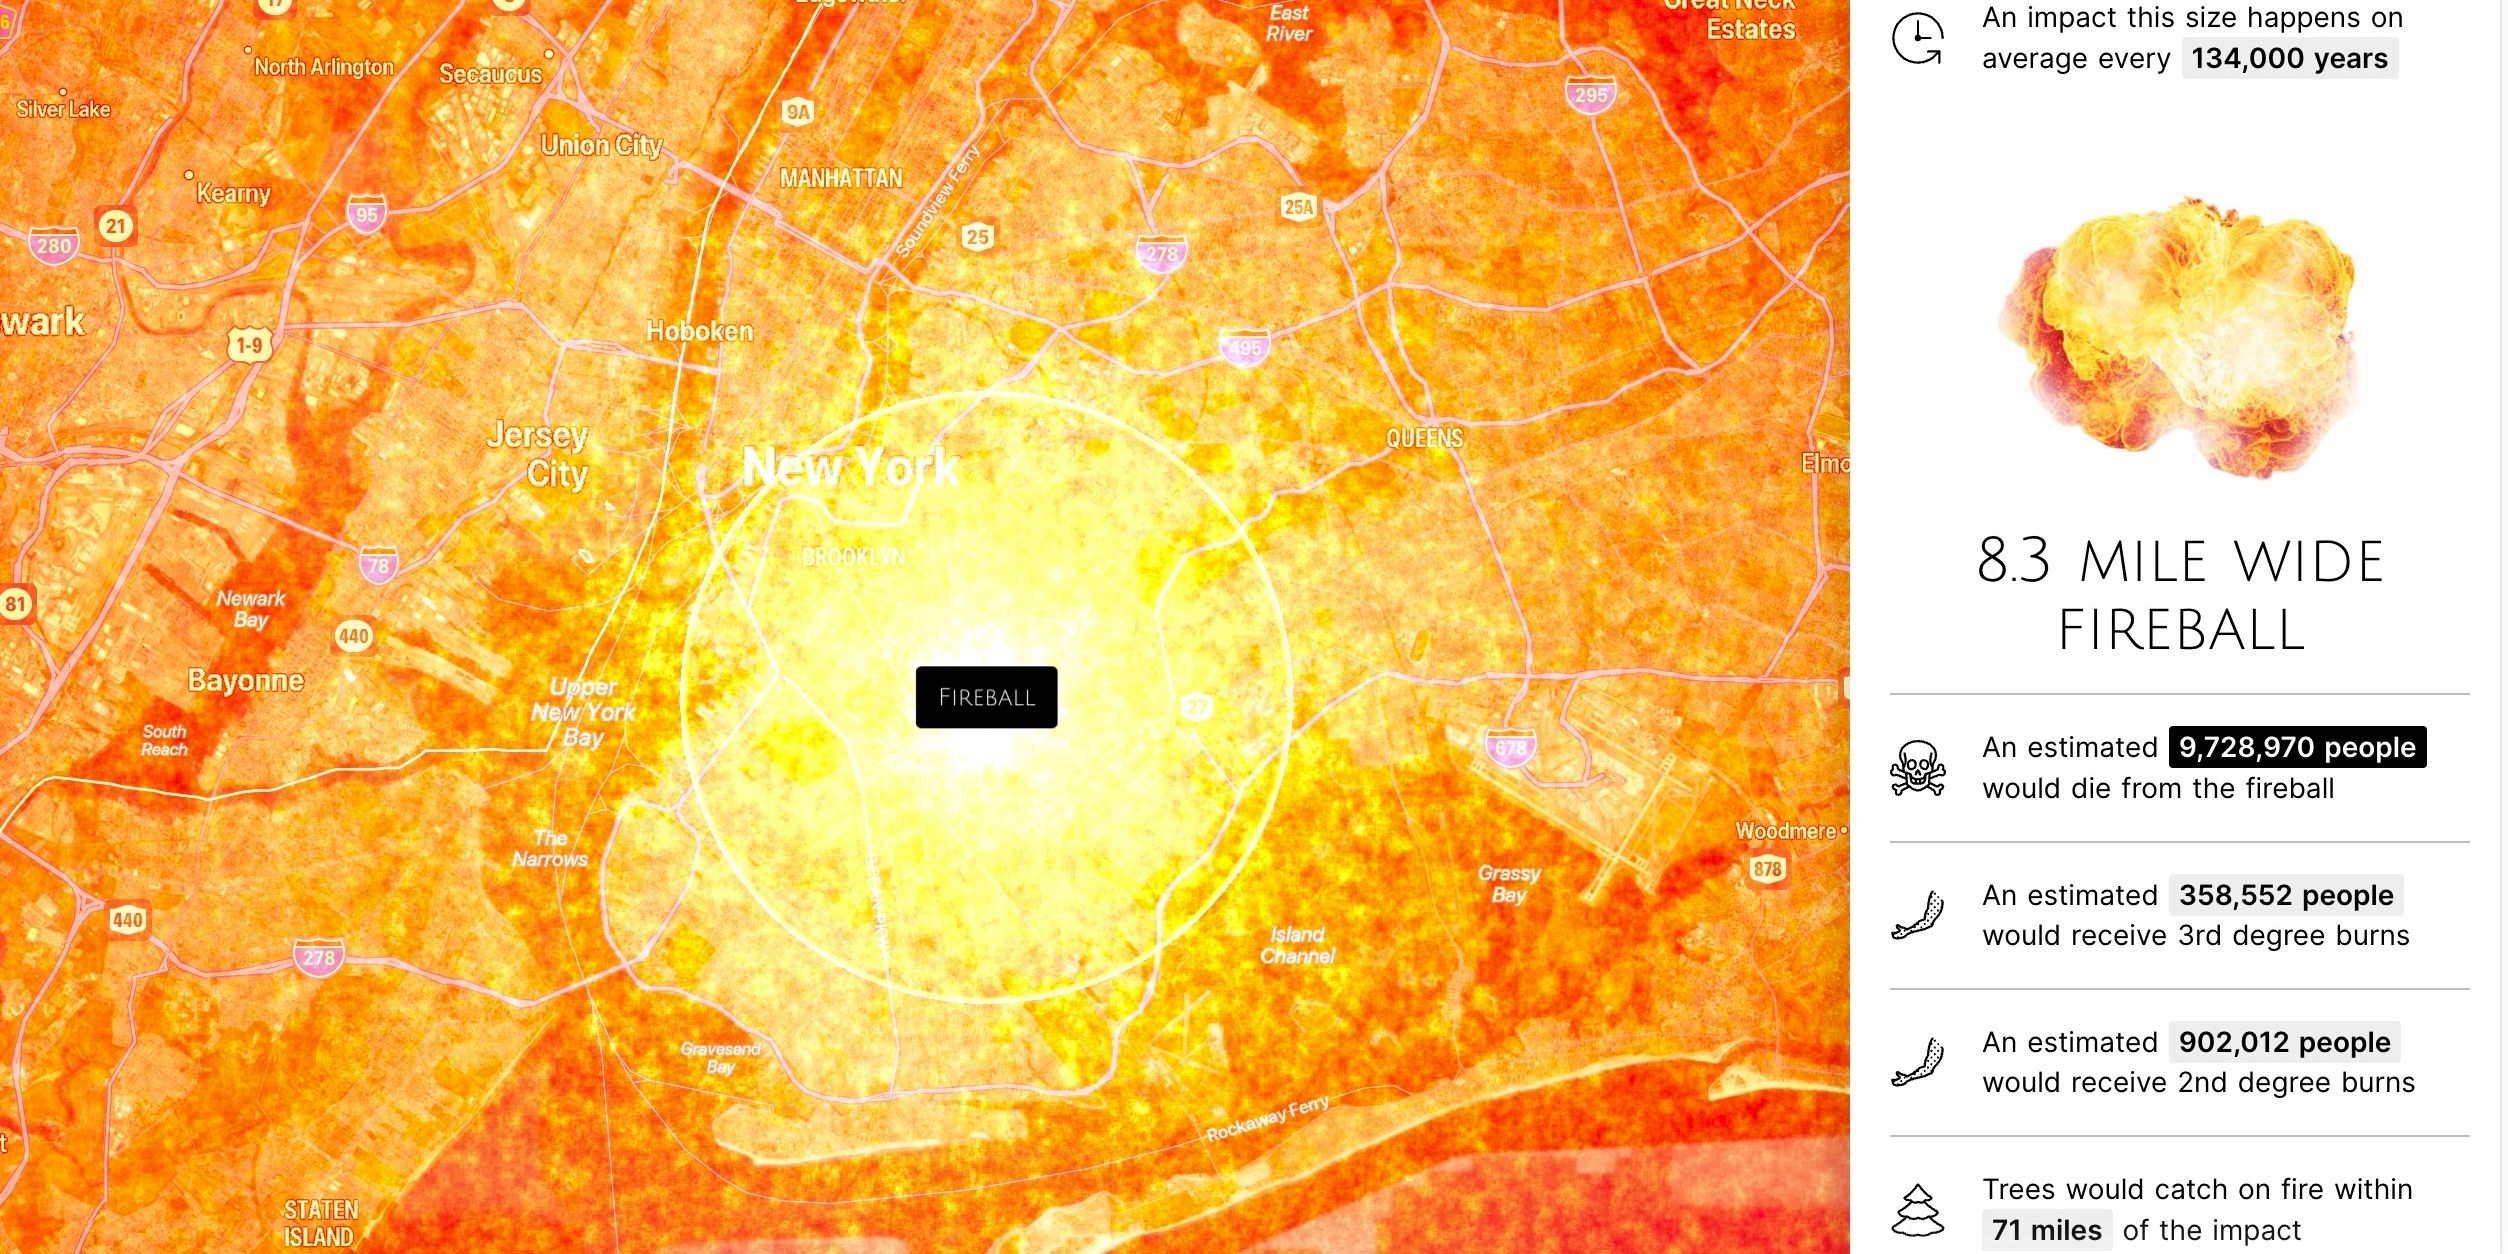 Tons de laranja brilhante com uma textura de fogo são sobrepostos em um mapa da área dos três estados, com o Brooklyn no centro, mostrando a bola de fogo do impacto de um asteroide.  O texto ao lado revela que a bola de fogo tem 8,3 milhas de largura,